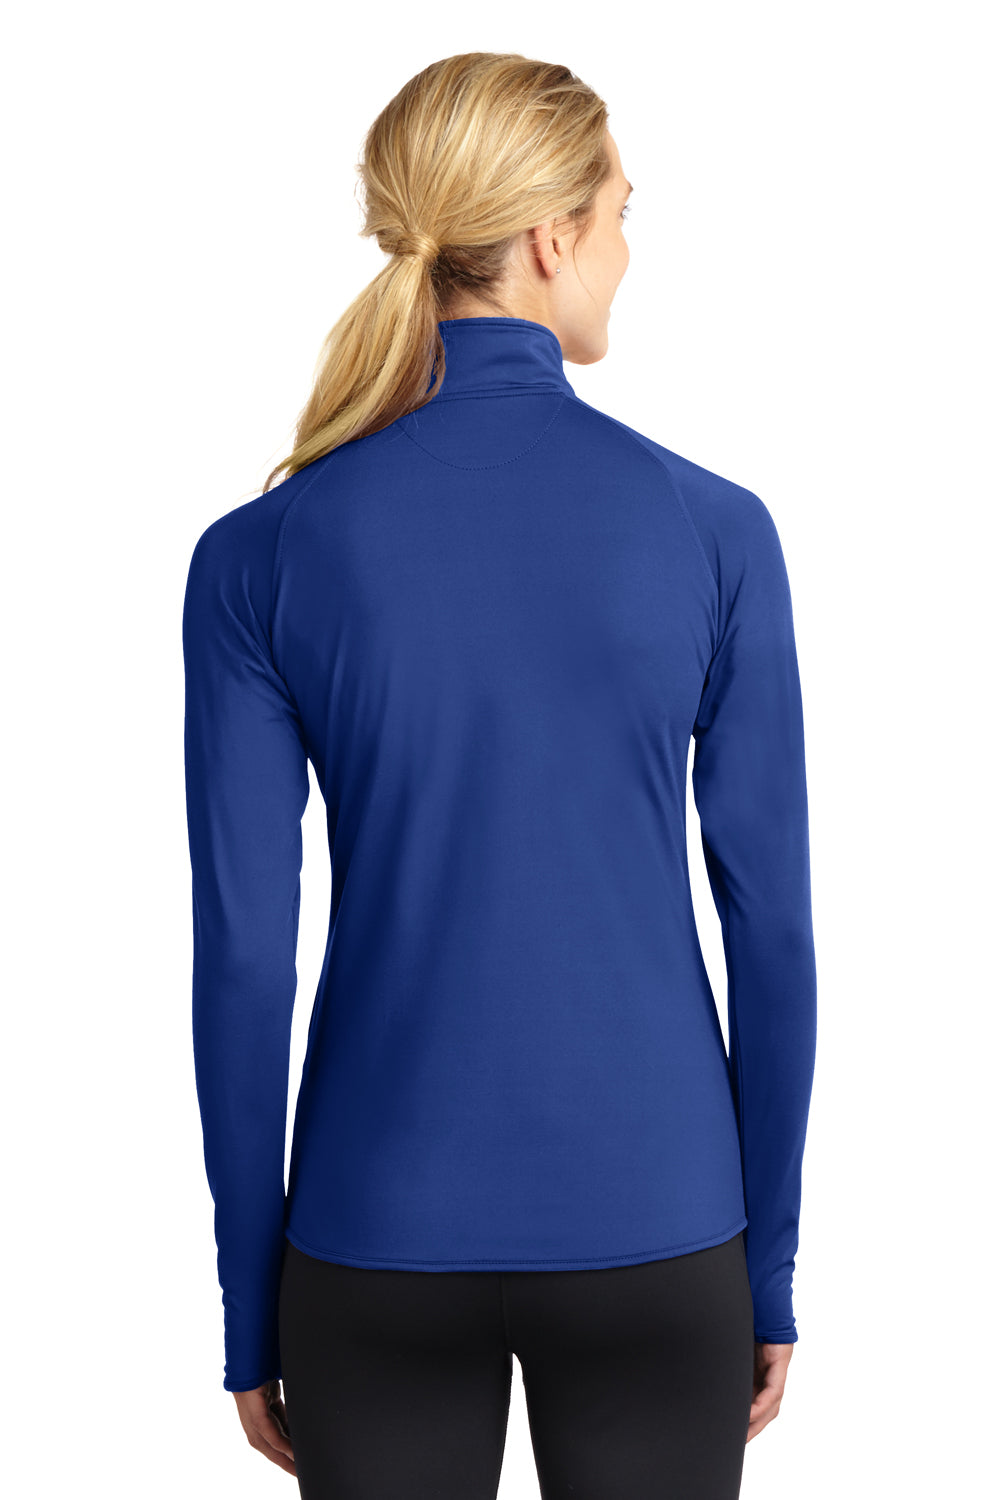 Sport-Tek LST850 Womens Sport-Wick Moisture Wicking 1/4 Zip Sweatshirt Royal Blue Back